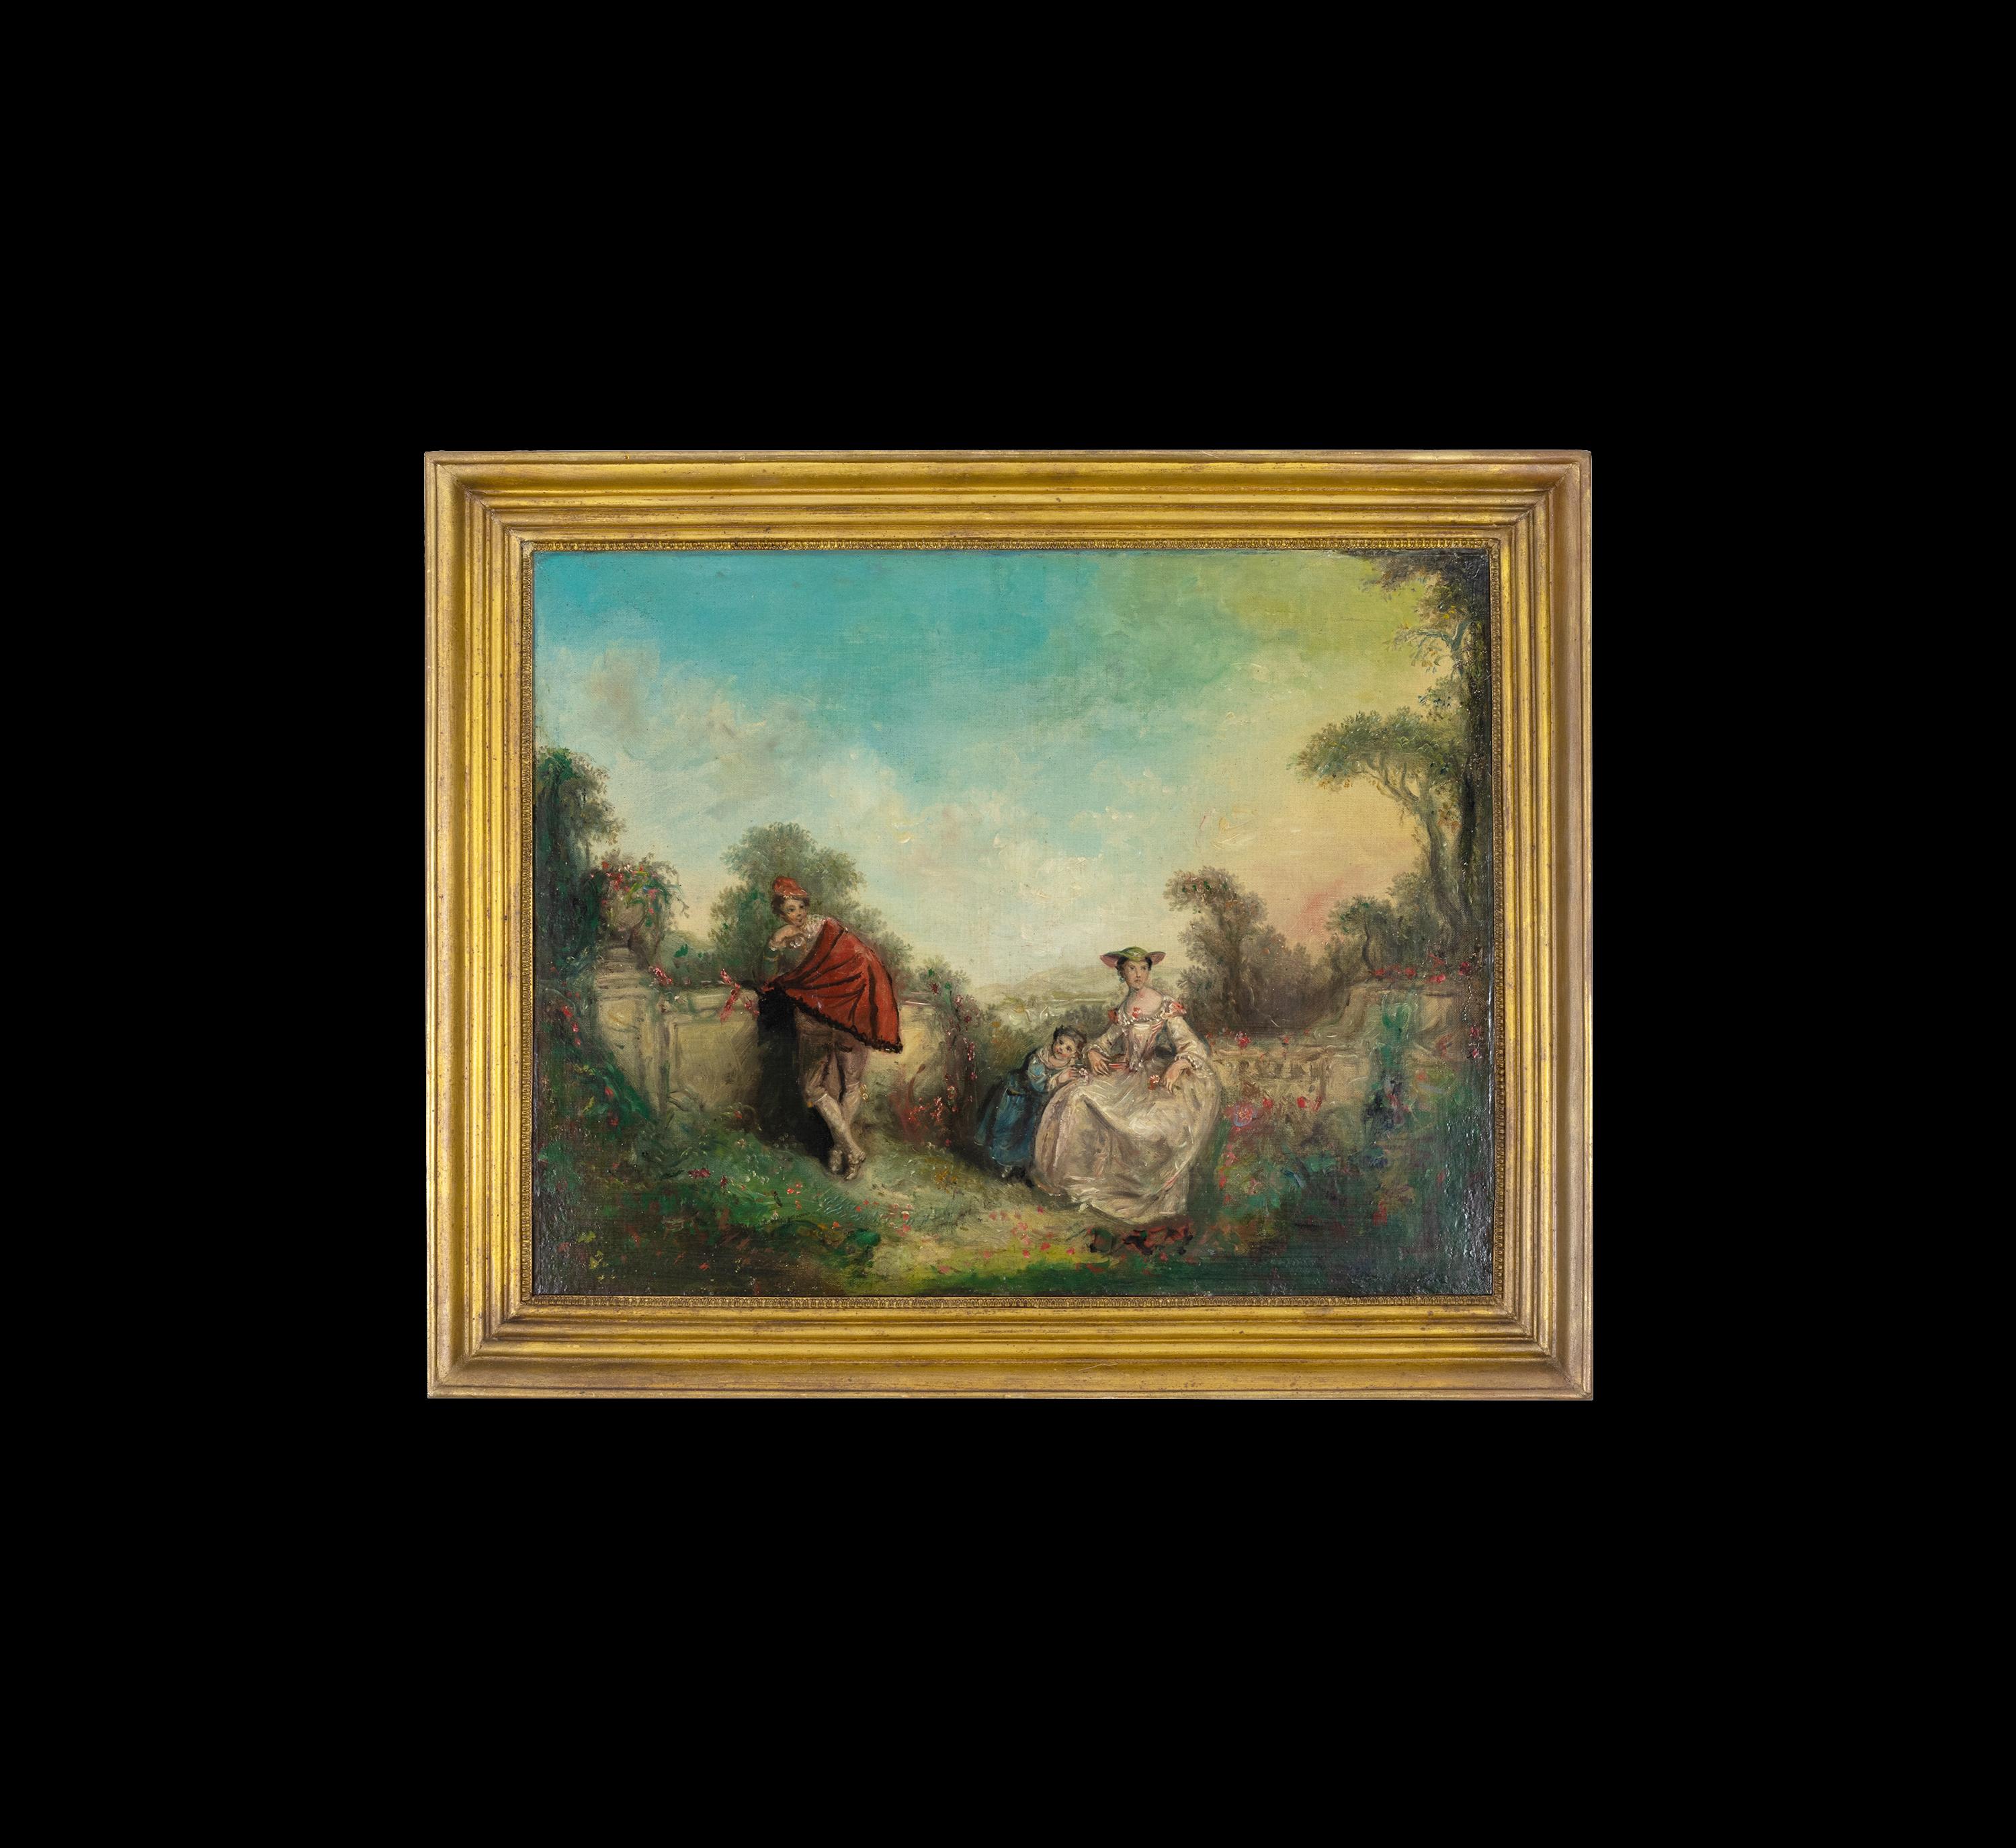 Ein romantisches Gemälde, das einen an die Wand gelehnten Vater und eine grübelnde Mutter mit ihrer Tochter darstellt, mit Seen und Bergen in der Ferne, inspiriert vom Barock.
Rahmen 76,5 x 62 cm 
Leinwand 64 x 51 cm  
Abmessungen: Rahmen 76,5 x 62